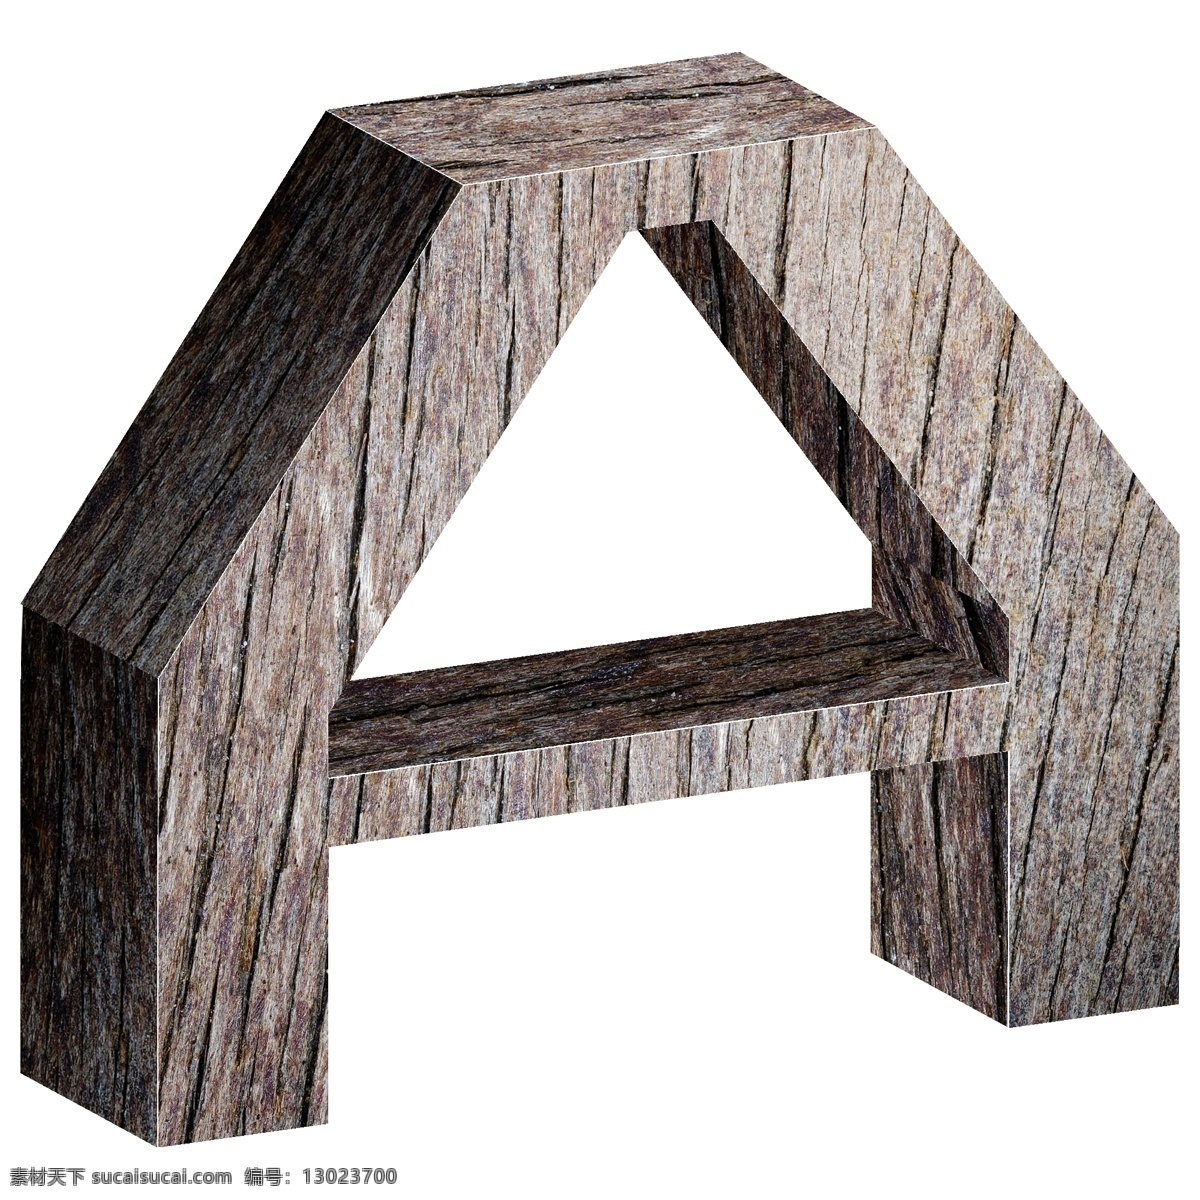 高清 免 抠 立体 木头 英文 字母 a 英文字母a c4d 形象 图案 几何 三维 3d